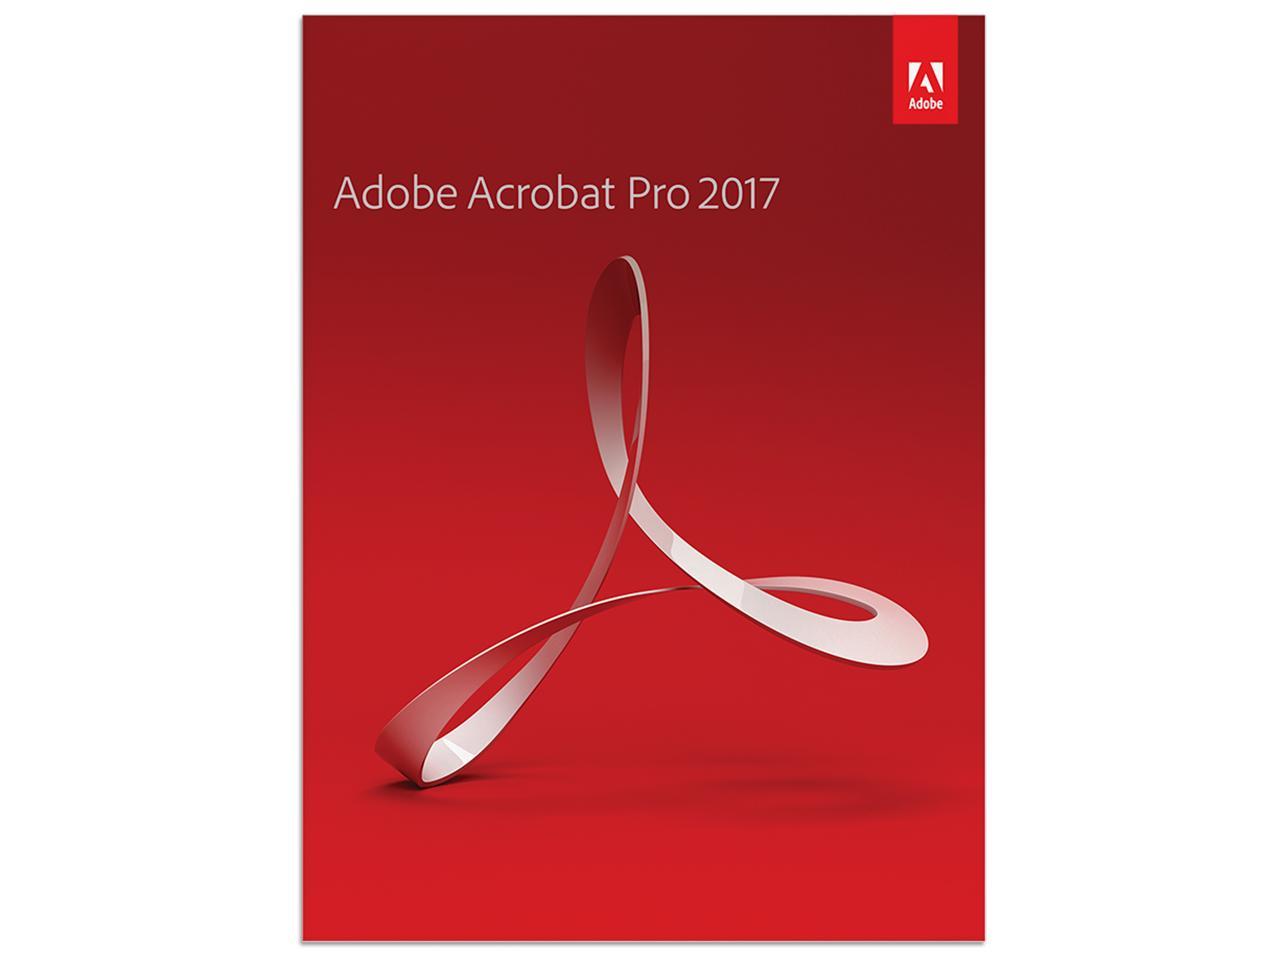 adobe acrobat pro 2017 windows free download